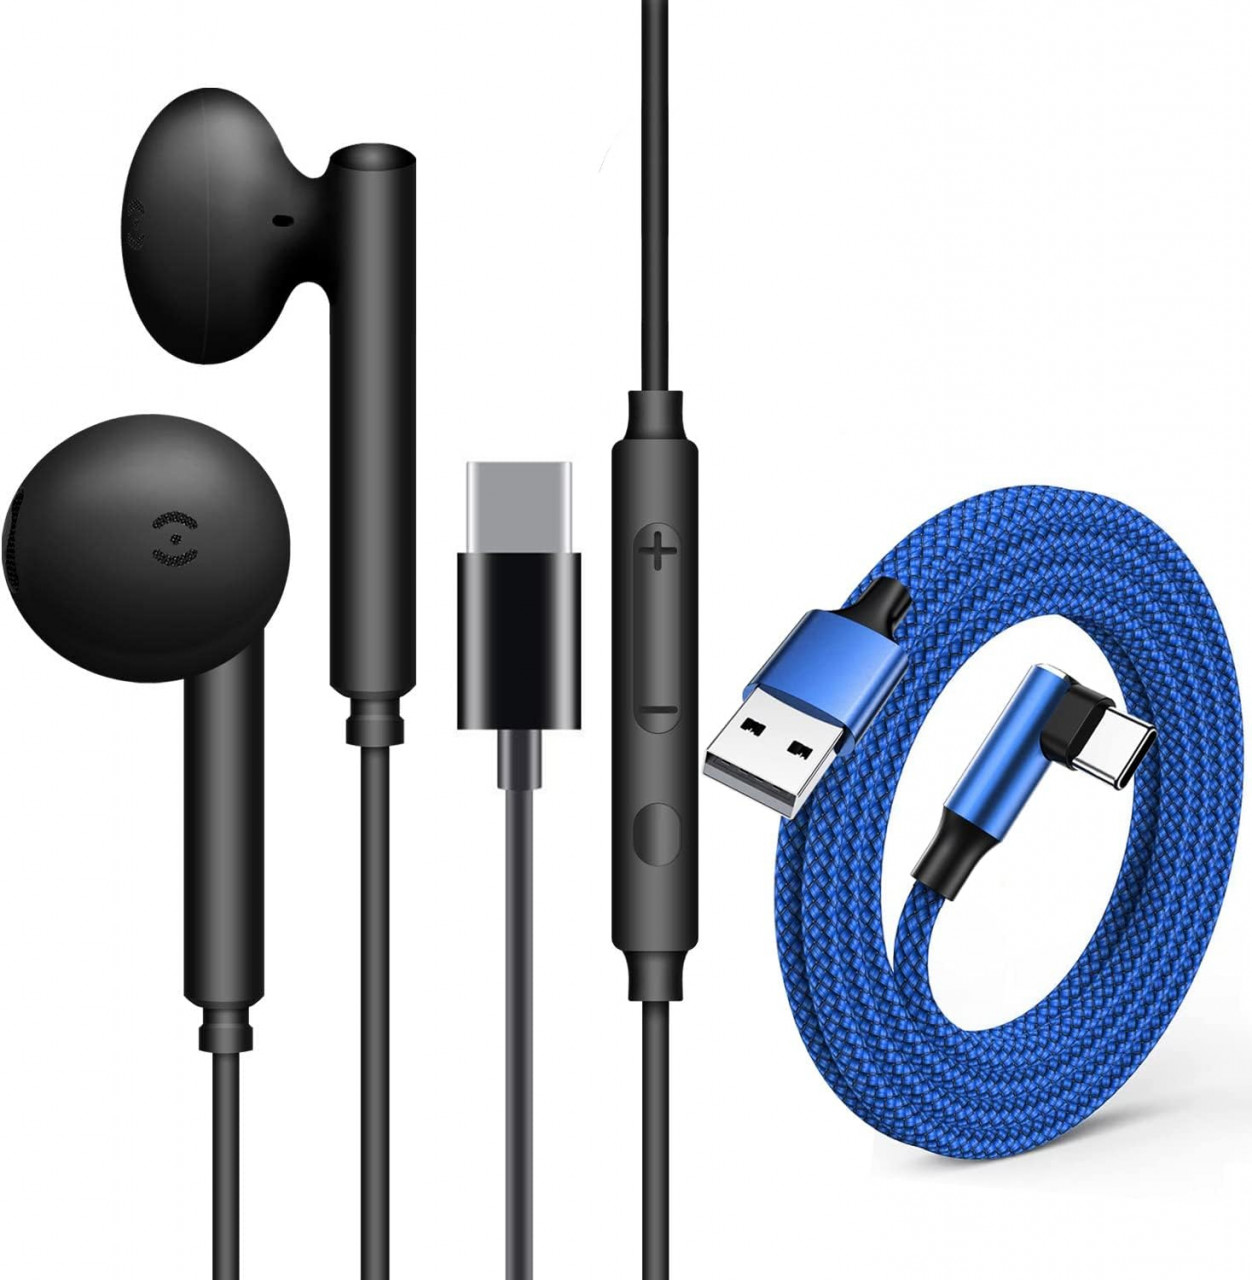 Set de casti USB-C cu microfon incorporat si cablu USB ZJXD, plastic/nailon/metal, albastru/negru chilipirul-zilei.ro/